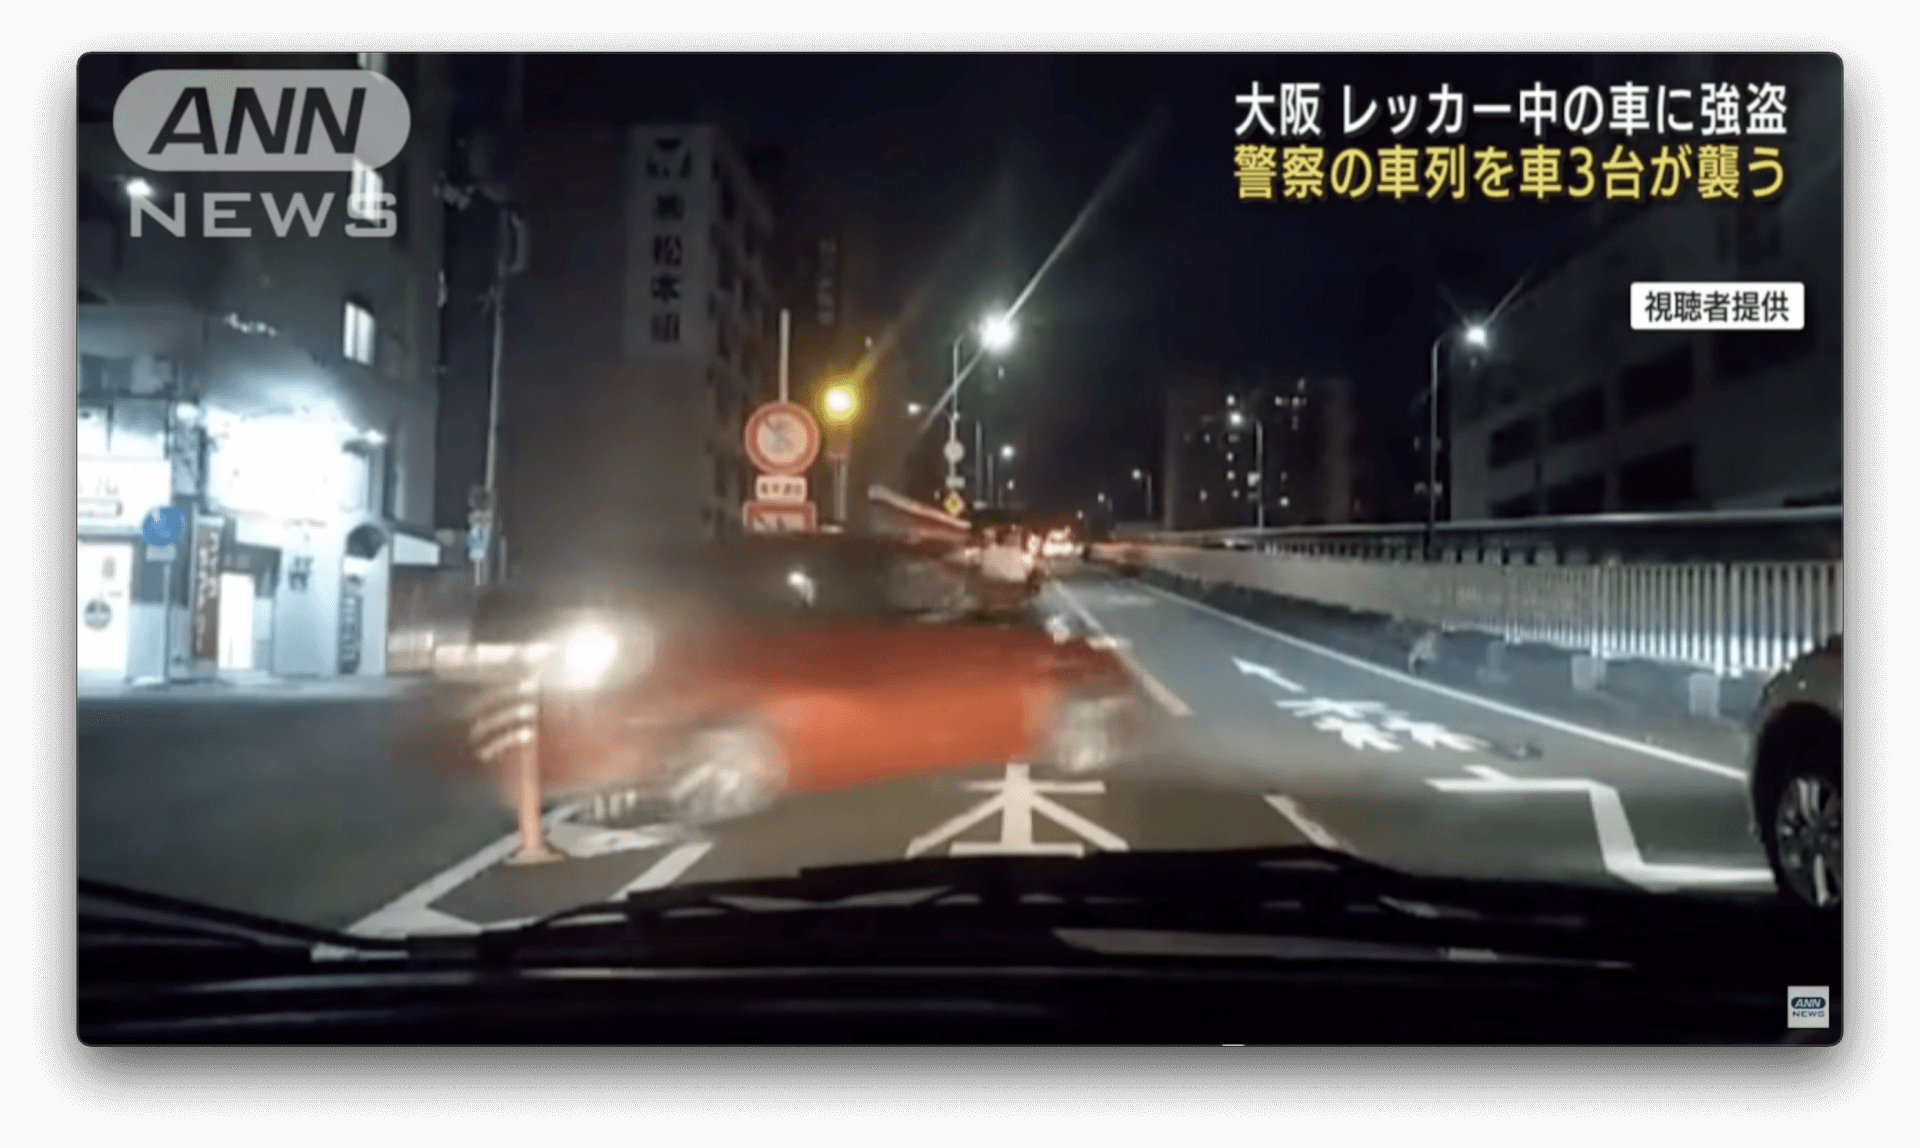 Fuga, estilo GTA, acontece em Osaka e choca o Japão